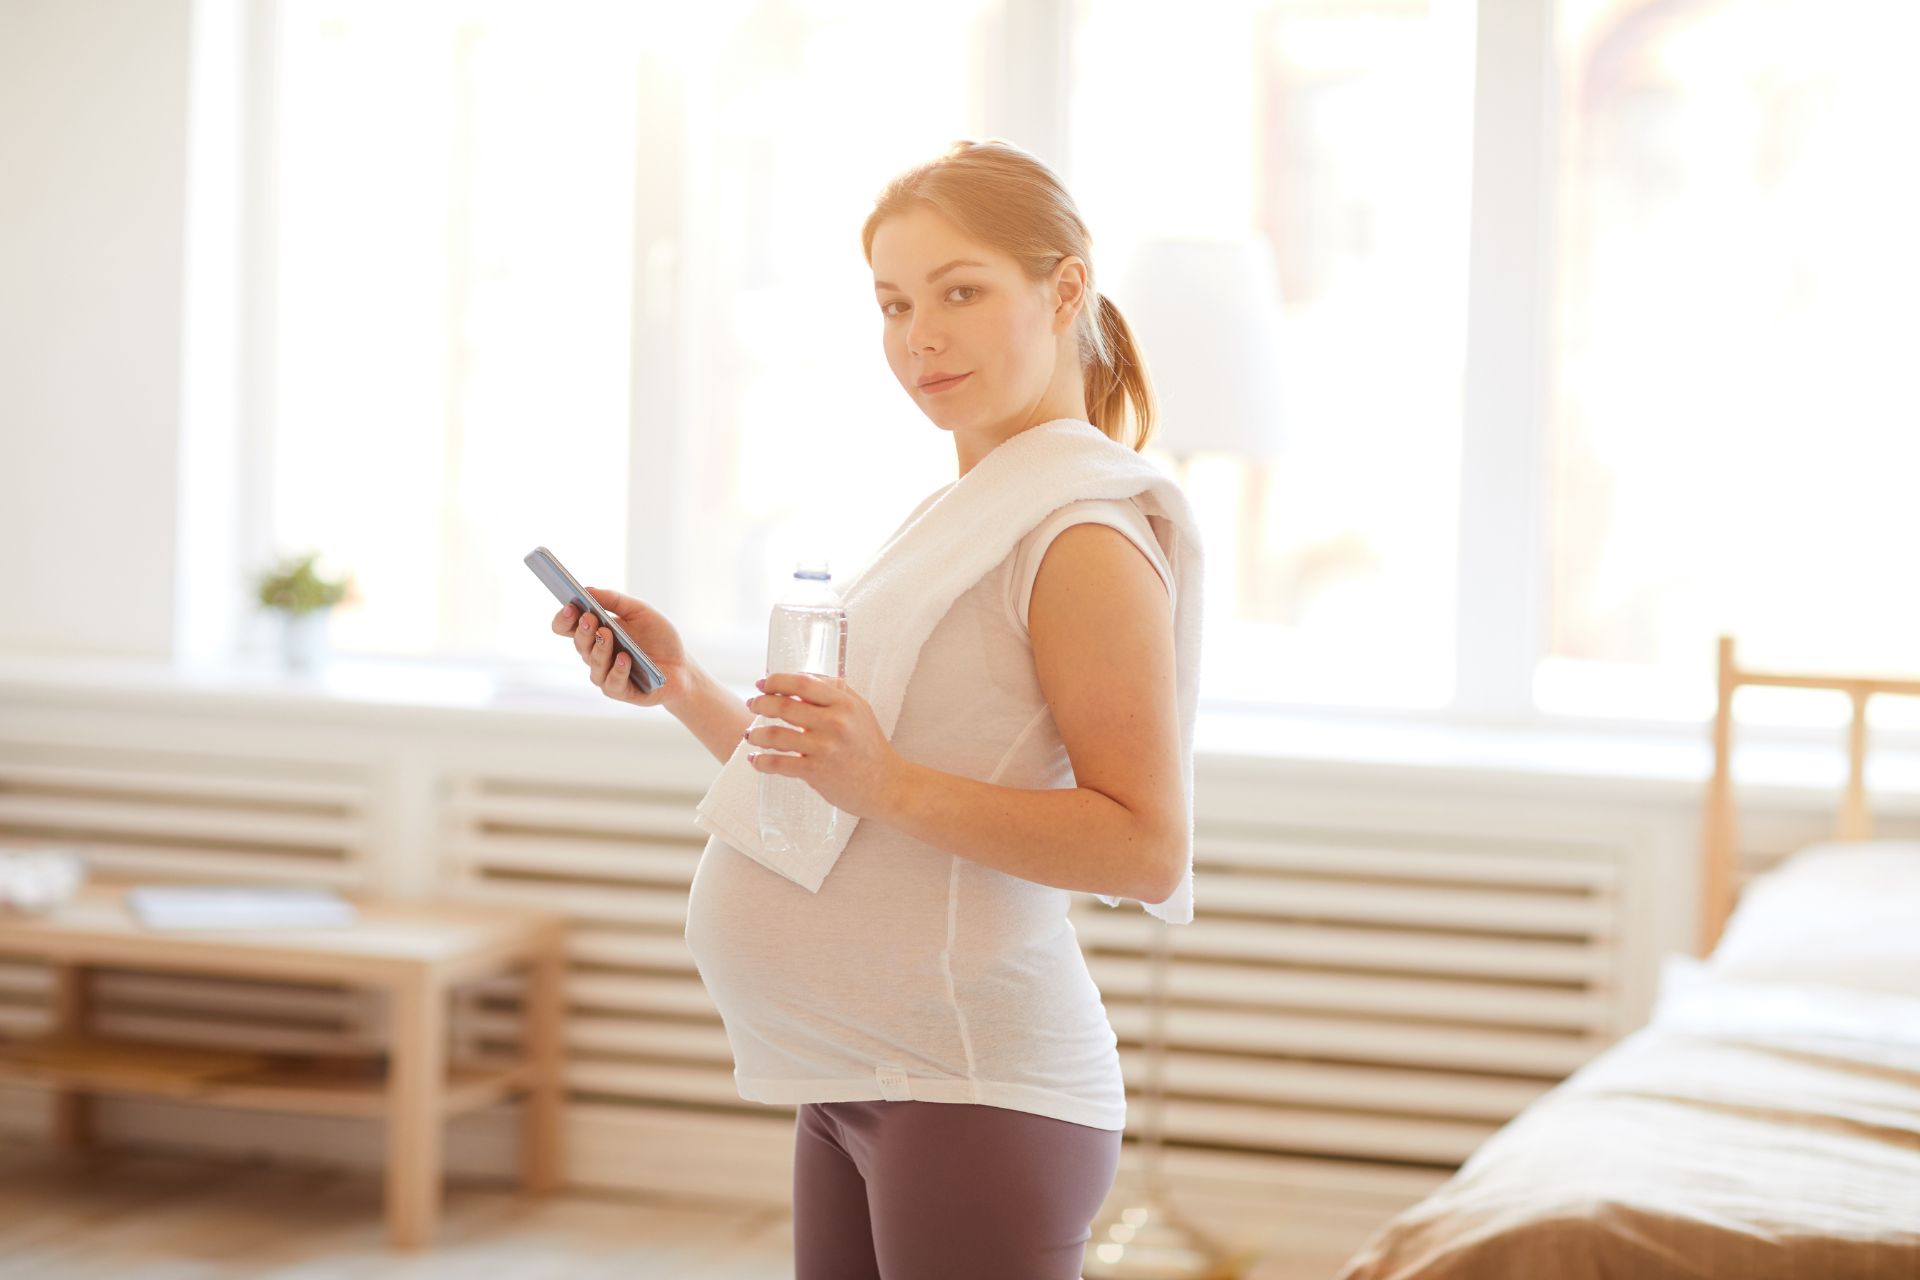 Γυμναστική και εγκυμοσύνη: Τα ευεργετικά οφέλη της γυμναστικής στην εγκυμοσύνη